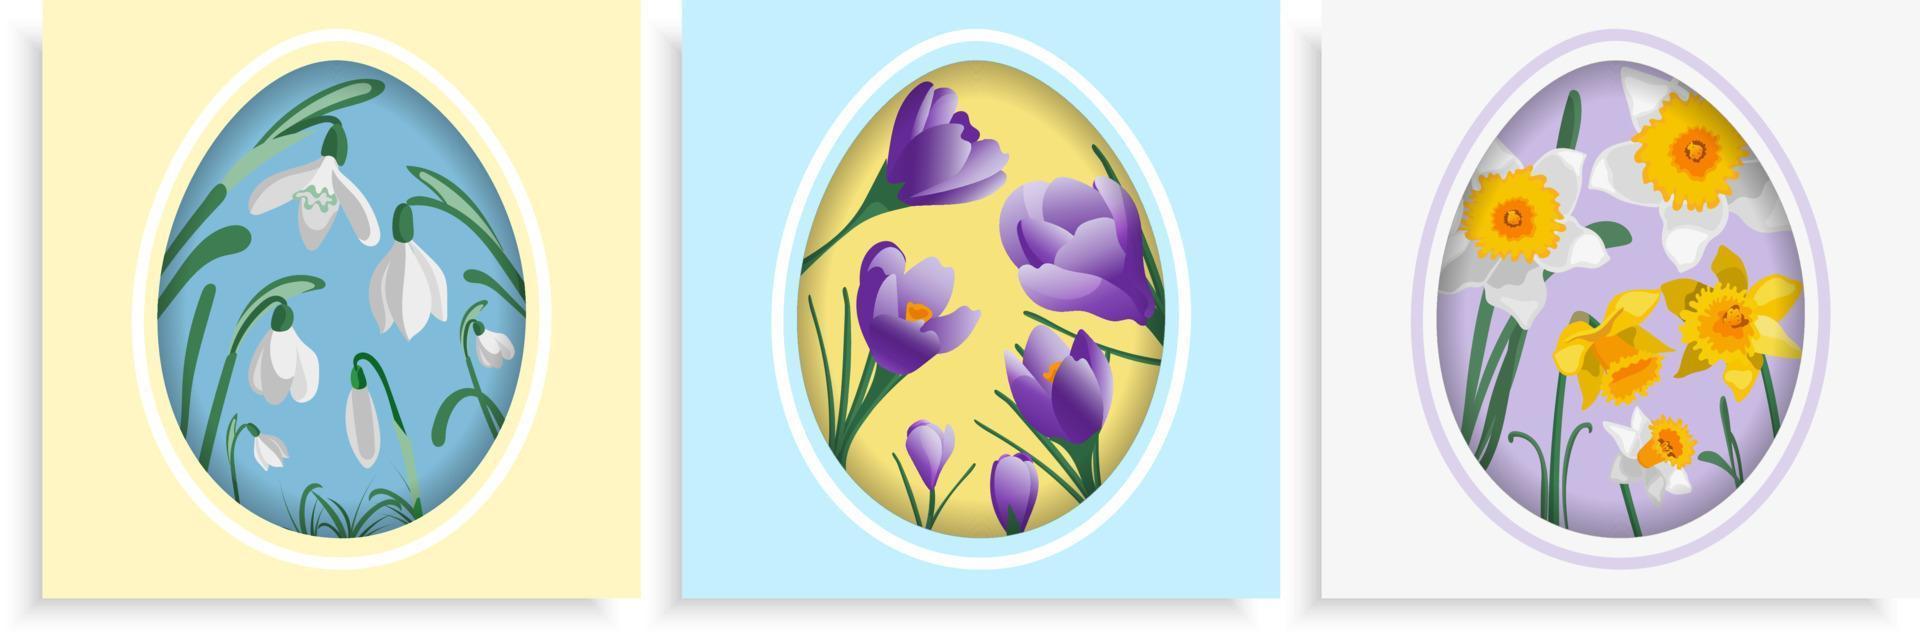 contento Pasqua carta impostato con uovo sagomato sfondo e primavera fiori bucaneve croco giunchiglie vettore